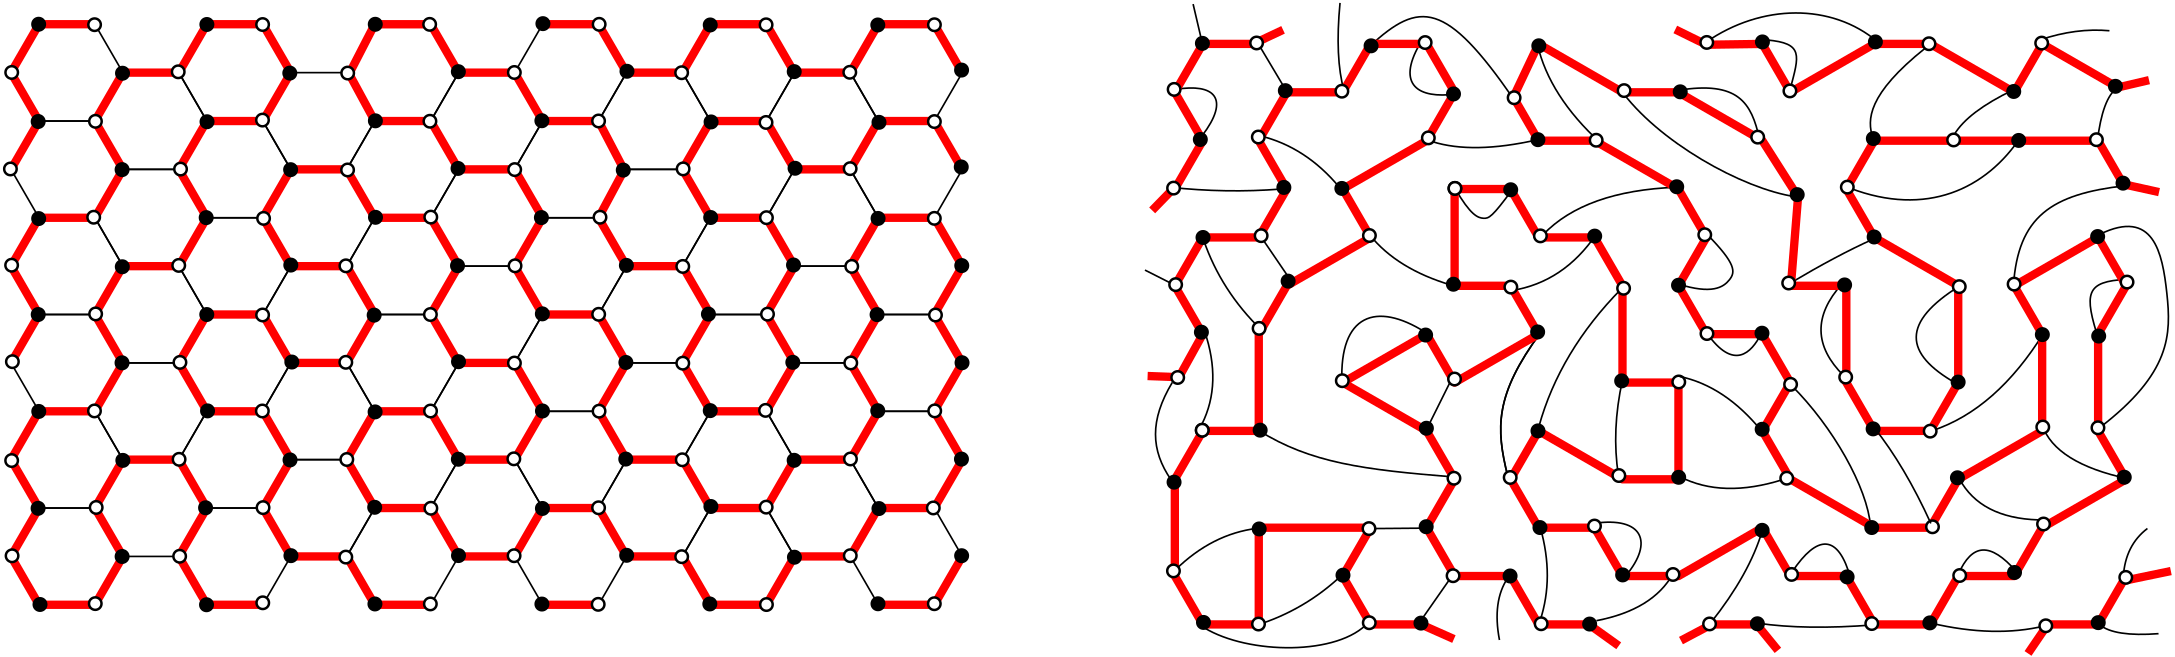 Portions de chemin hamiltonien sur le réseau en nid-d’abeilles (gauche) et sur un réseau bicubique aléatoire 